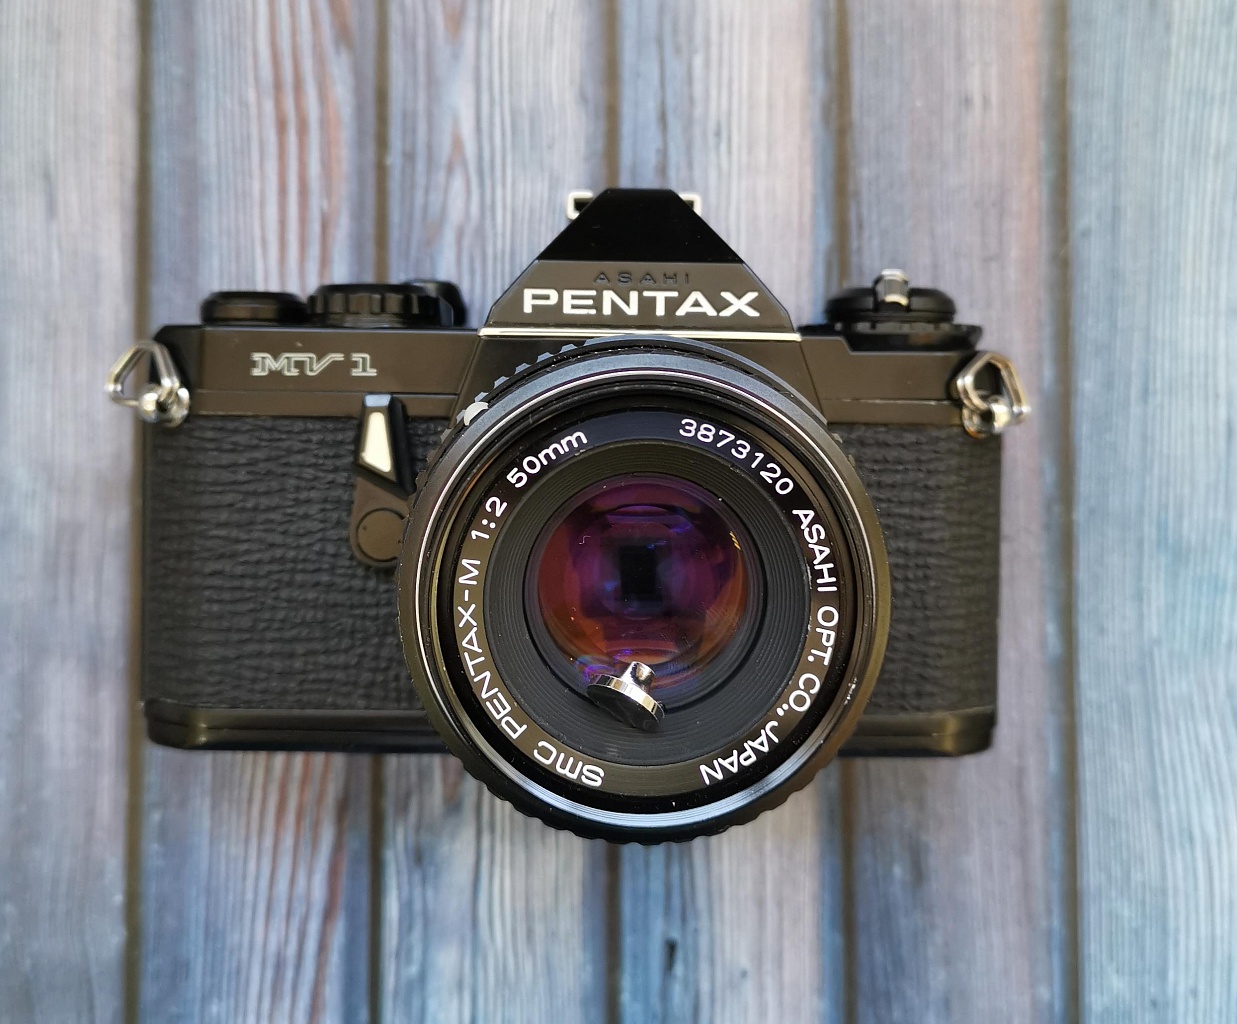 Pentax MV-1 + Smc pentax-m 50 mm f/2 фото №1